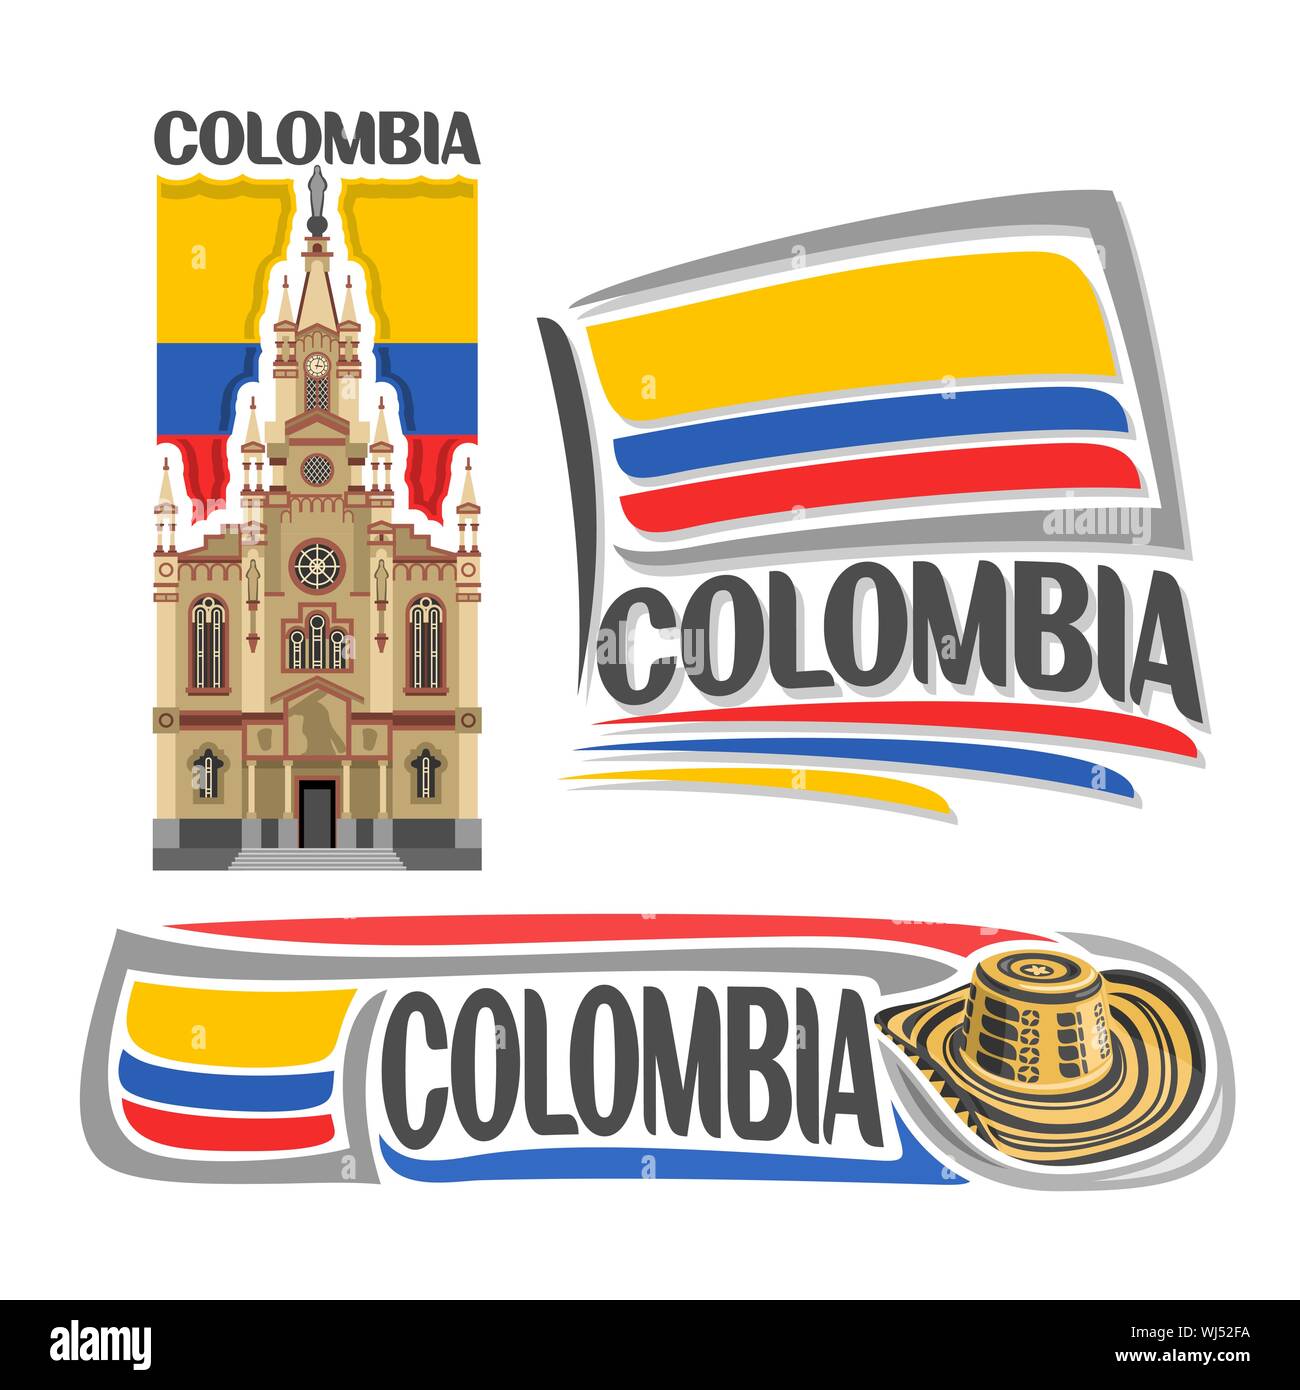 Logo Vector pour la Colombie, 3 images isolées : Jésus Nazareno church à Medellin sur fond de drapeau national colombien et sombrero chapeau vueltia Illustration de Vecteur